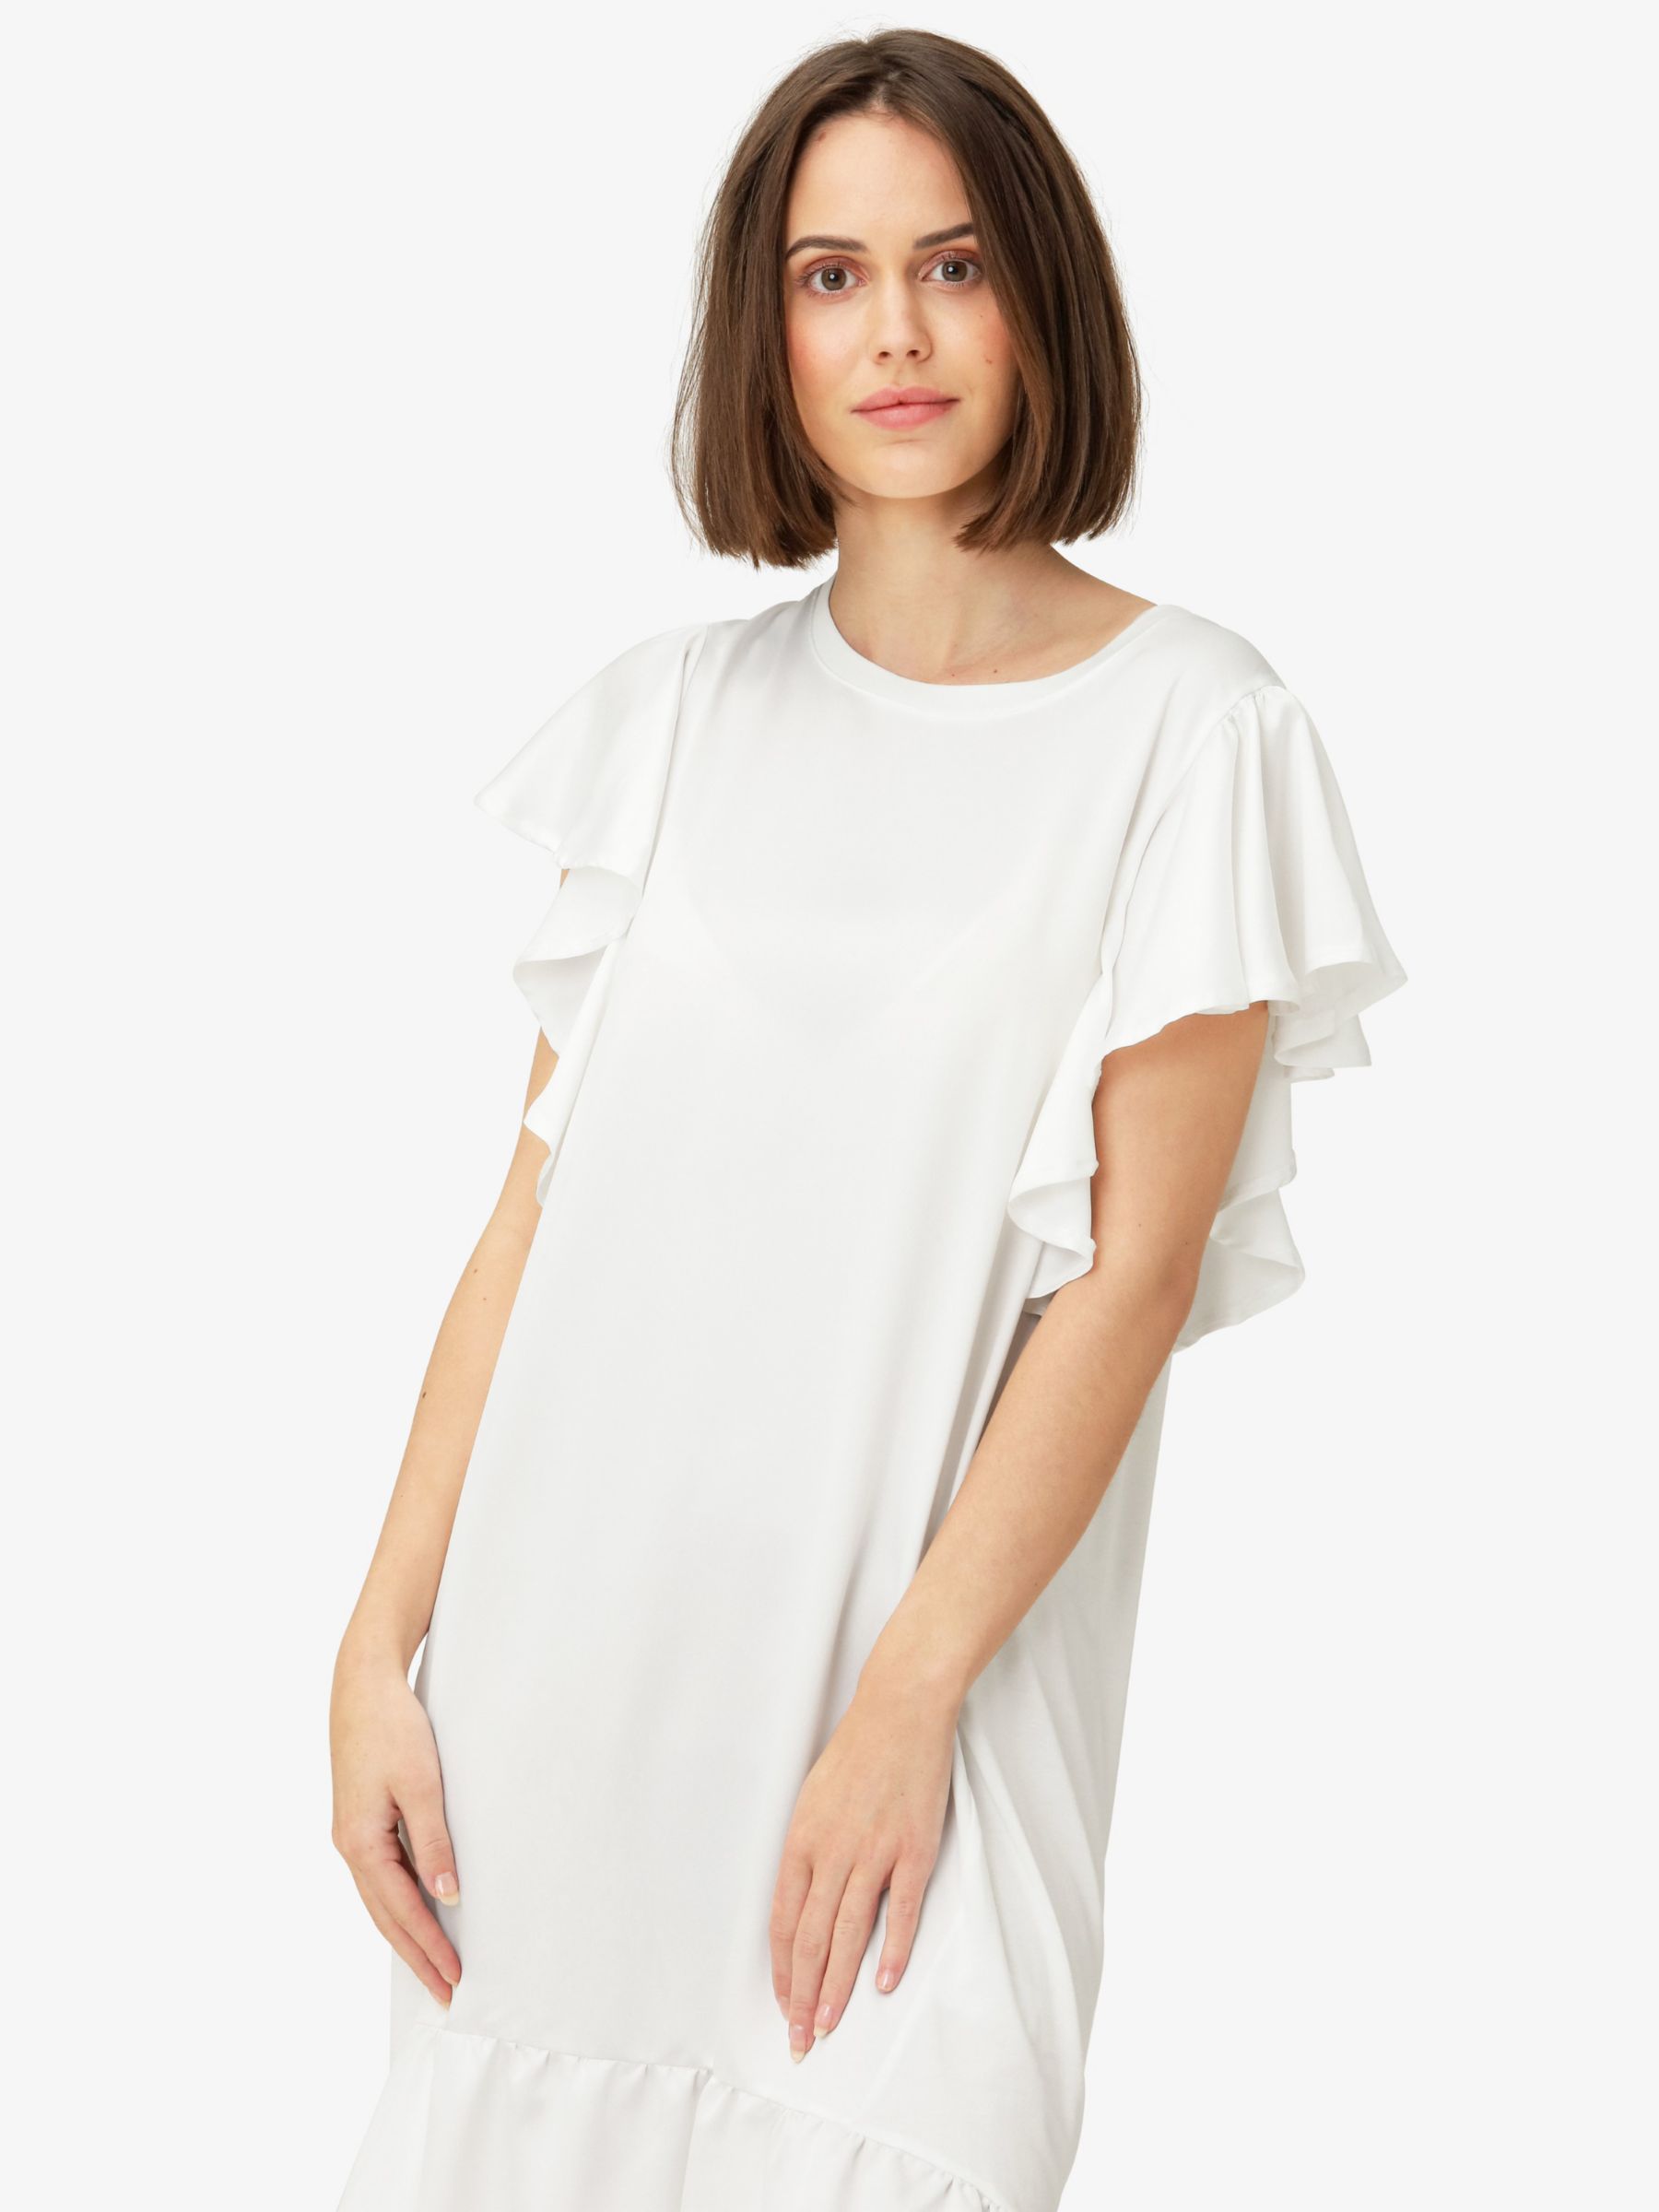 Noa Noa Katie Ruffled Raglan Sleeve Dress, White, XXS